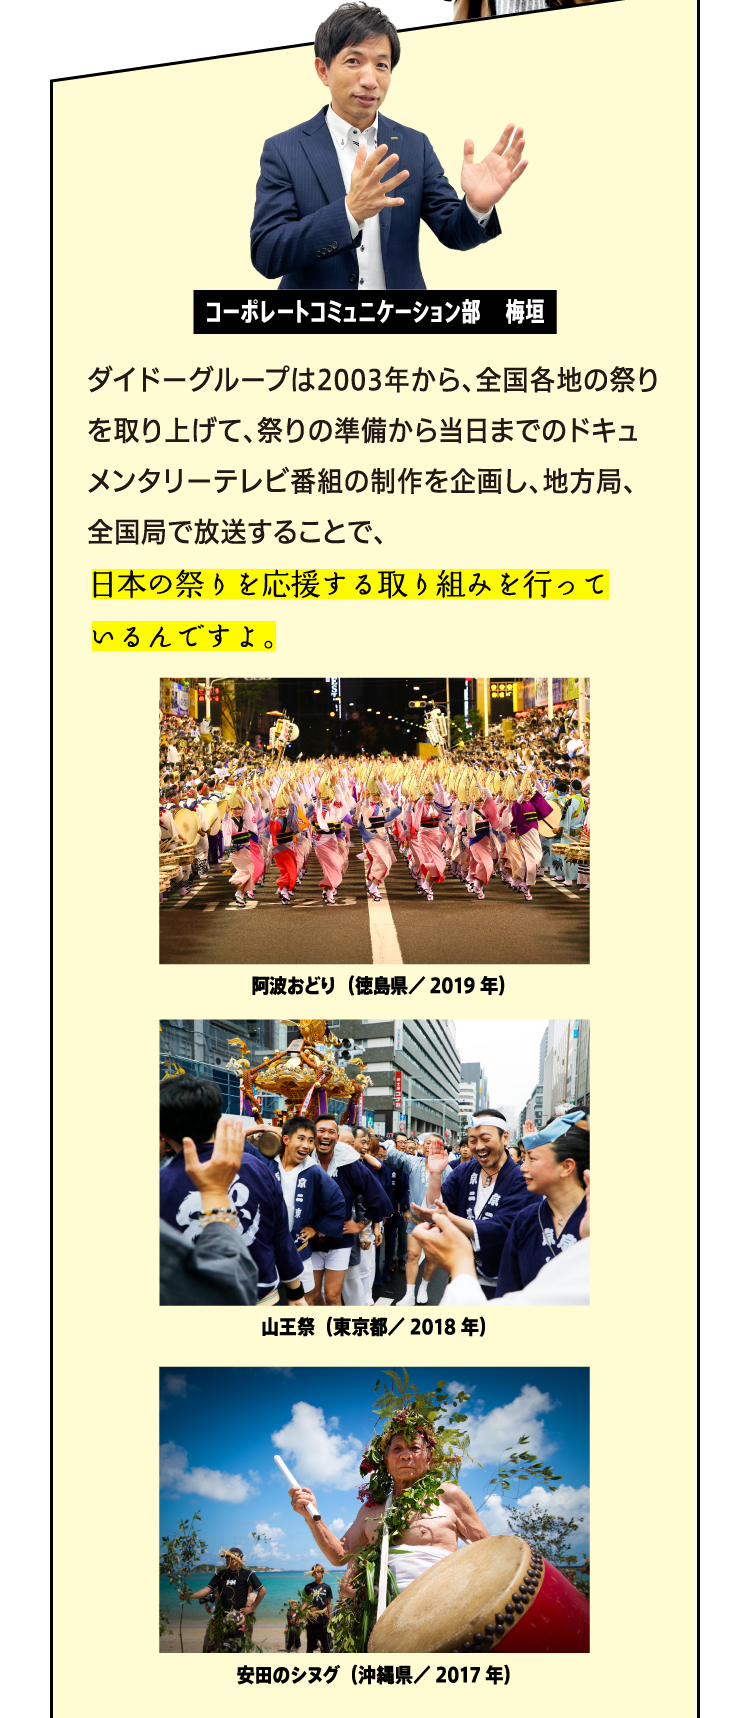 ダイドードリンコは2003年から、全国各地の祭りを取り上げて、祭りの準備から当日までのドキュメンタリーテレビ番組の制作を企画し、地方局、全国局で放送することで、日本の祭りを応援する取り組みを行っているんですよ。